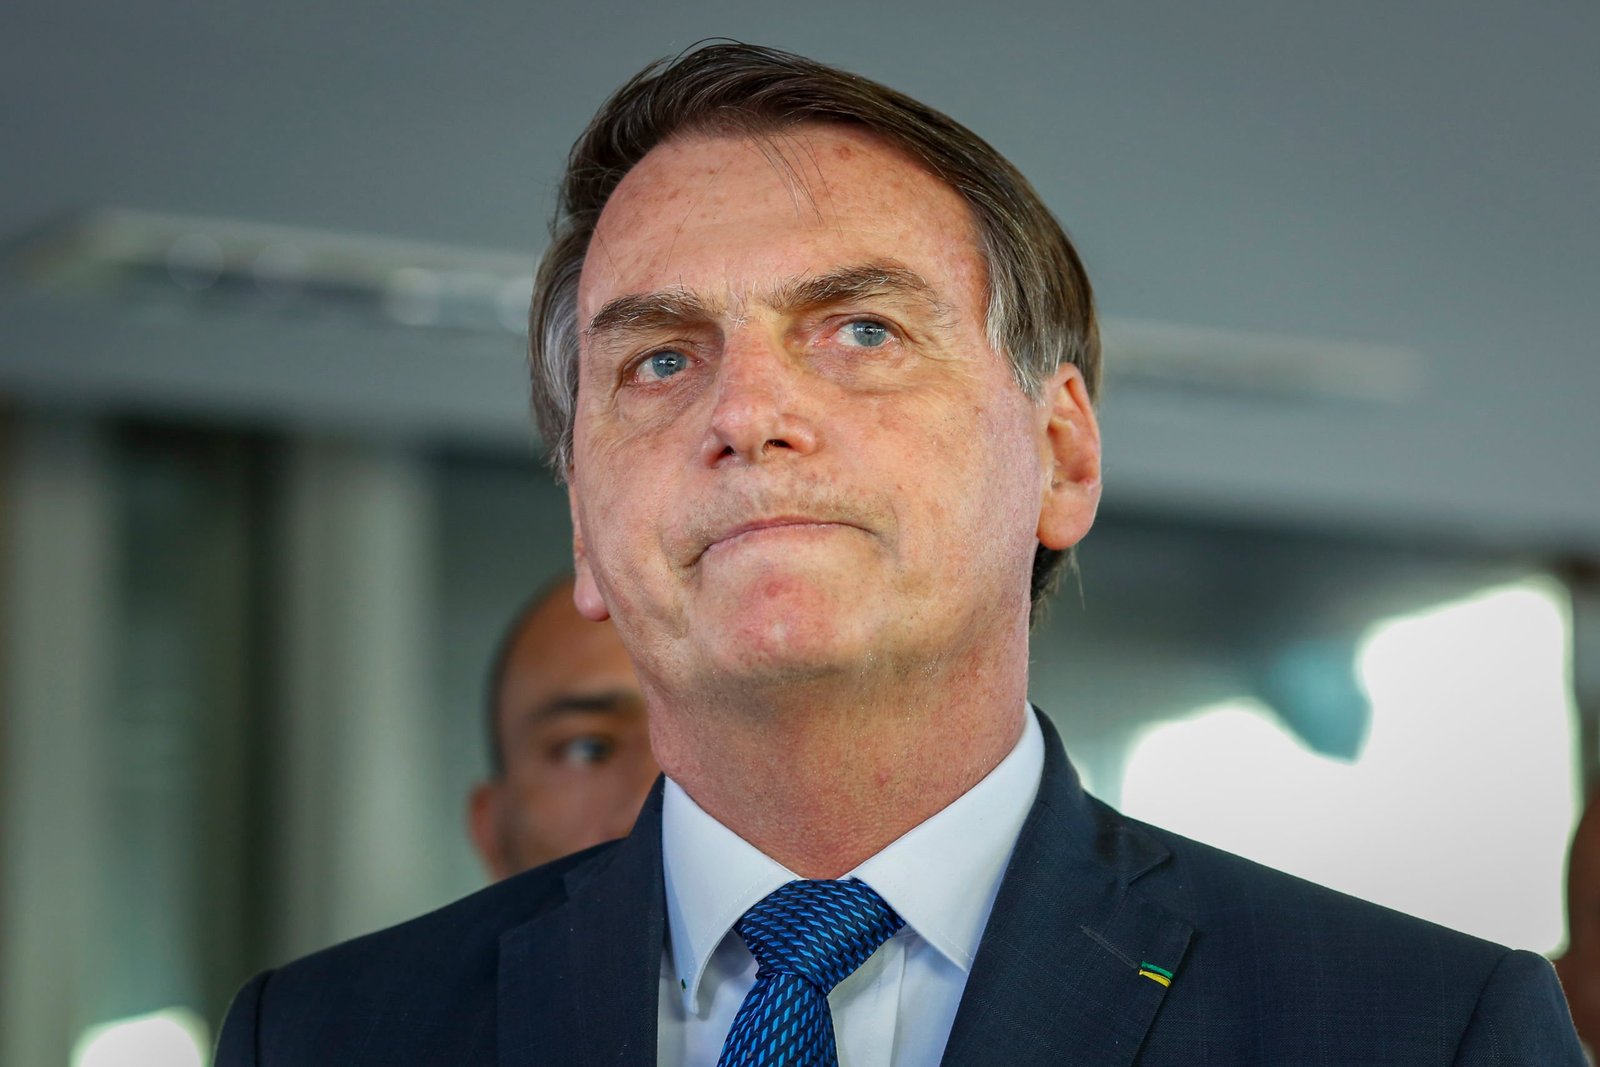 Ministro do TSE dá 3 dias para Bolsonaro explicar minuta de decreto